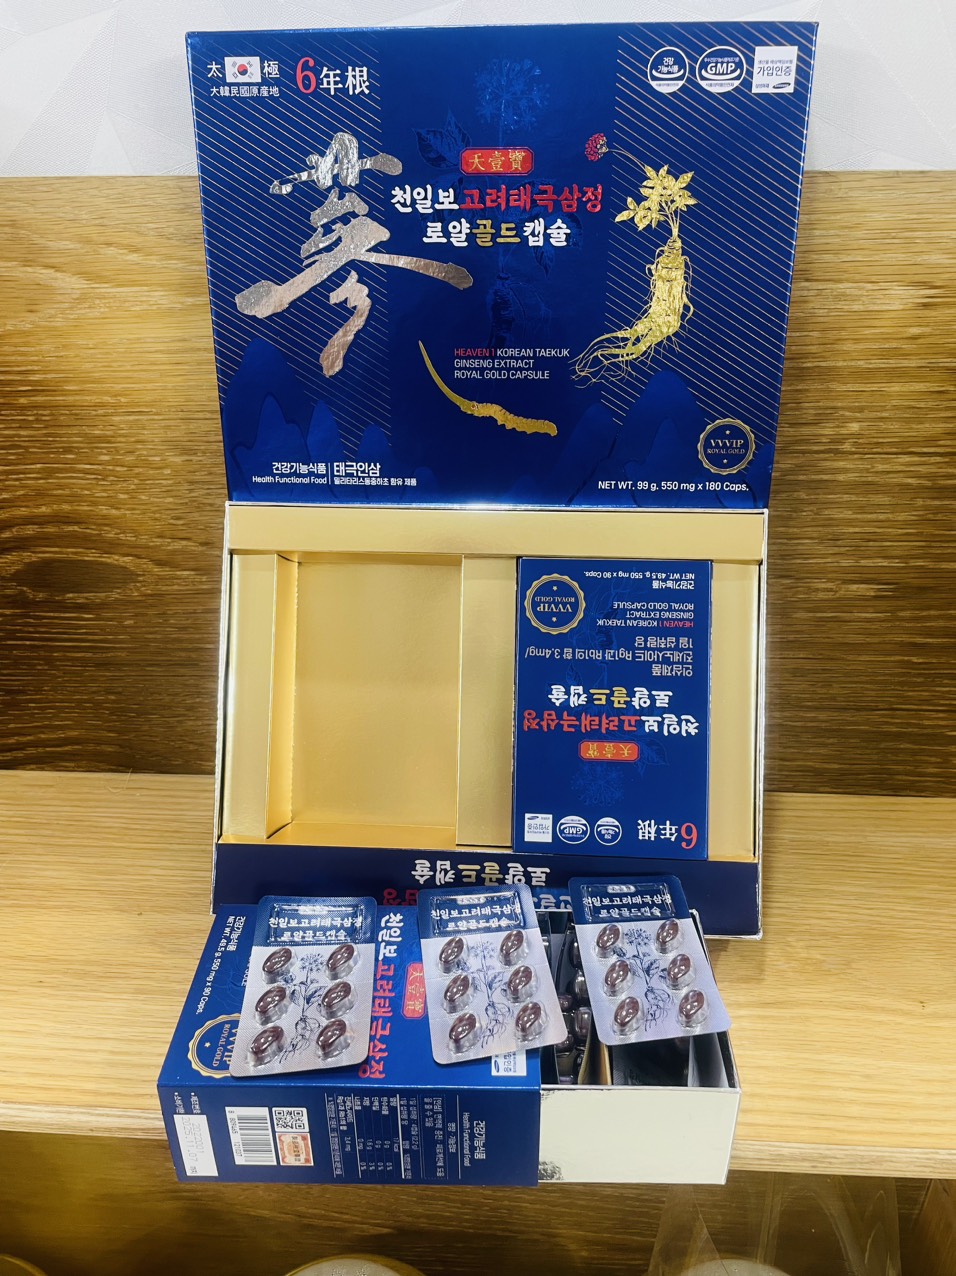  Thiên Sâm Đông Trùng Hạ Thảo 180 Viên Heaven 1 Korean Taekuk Ginseng Extract Royal Gold C